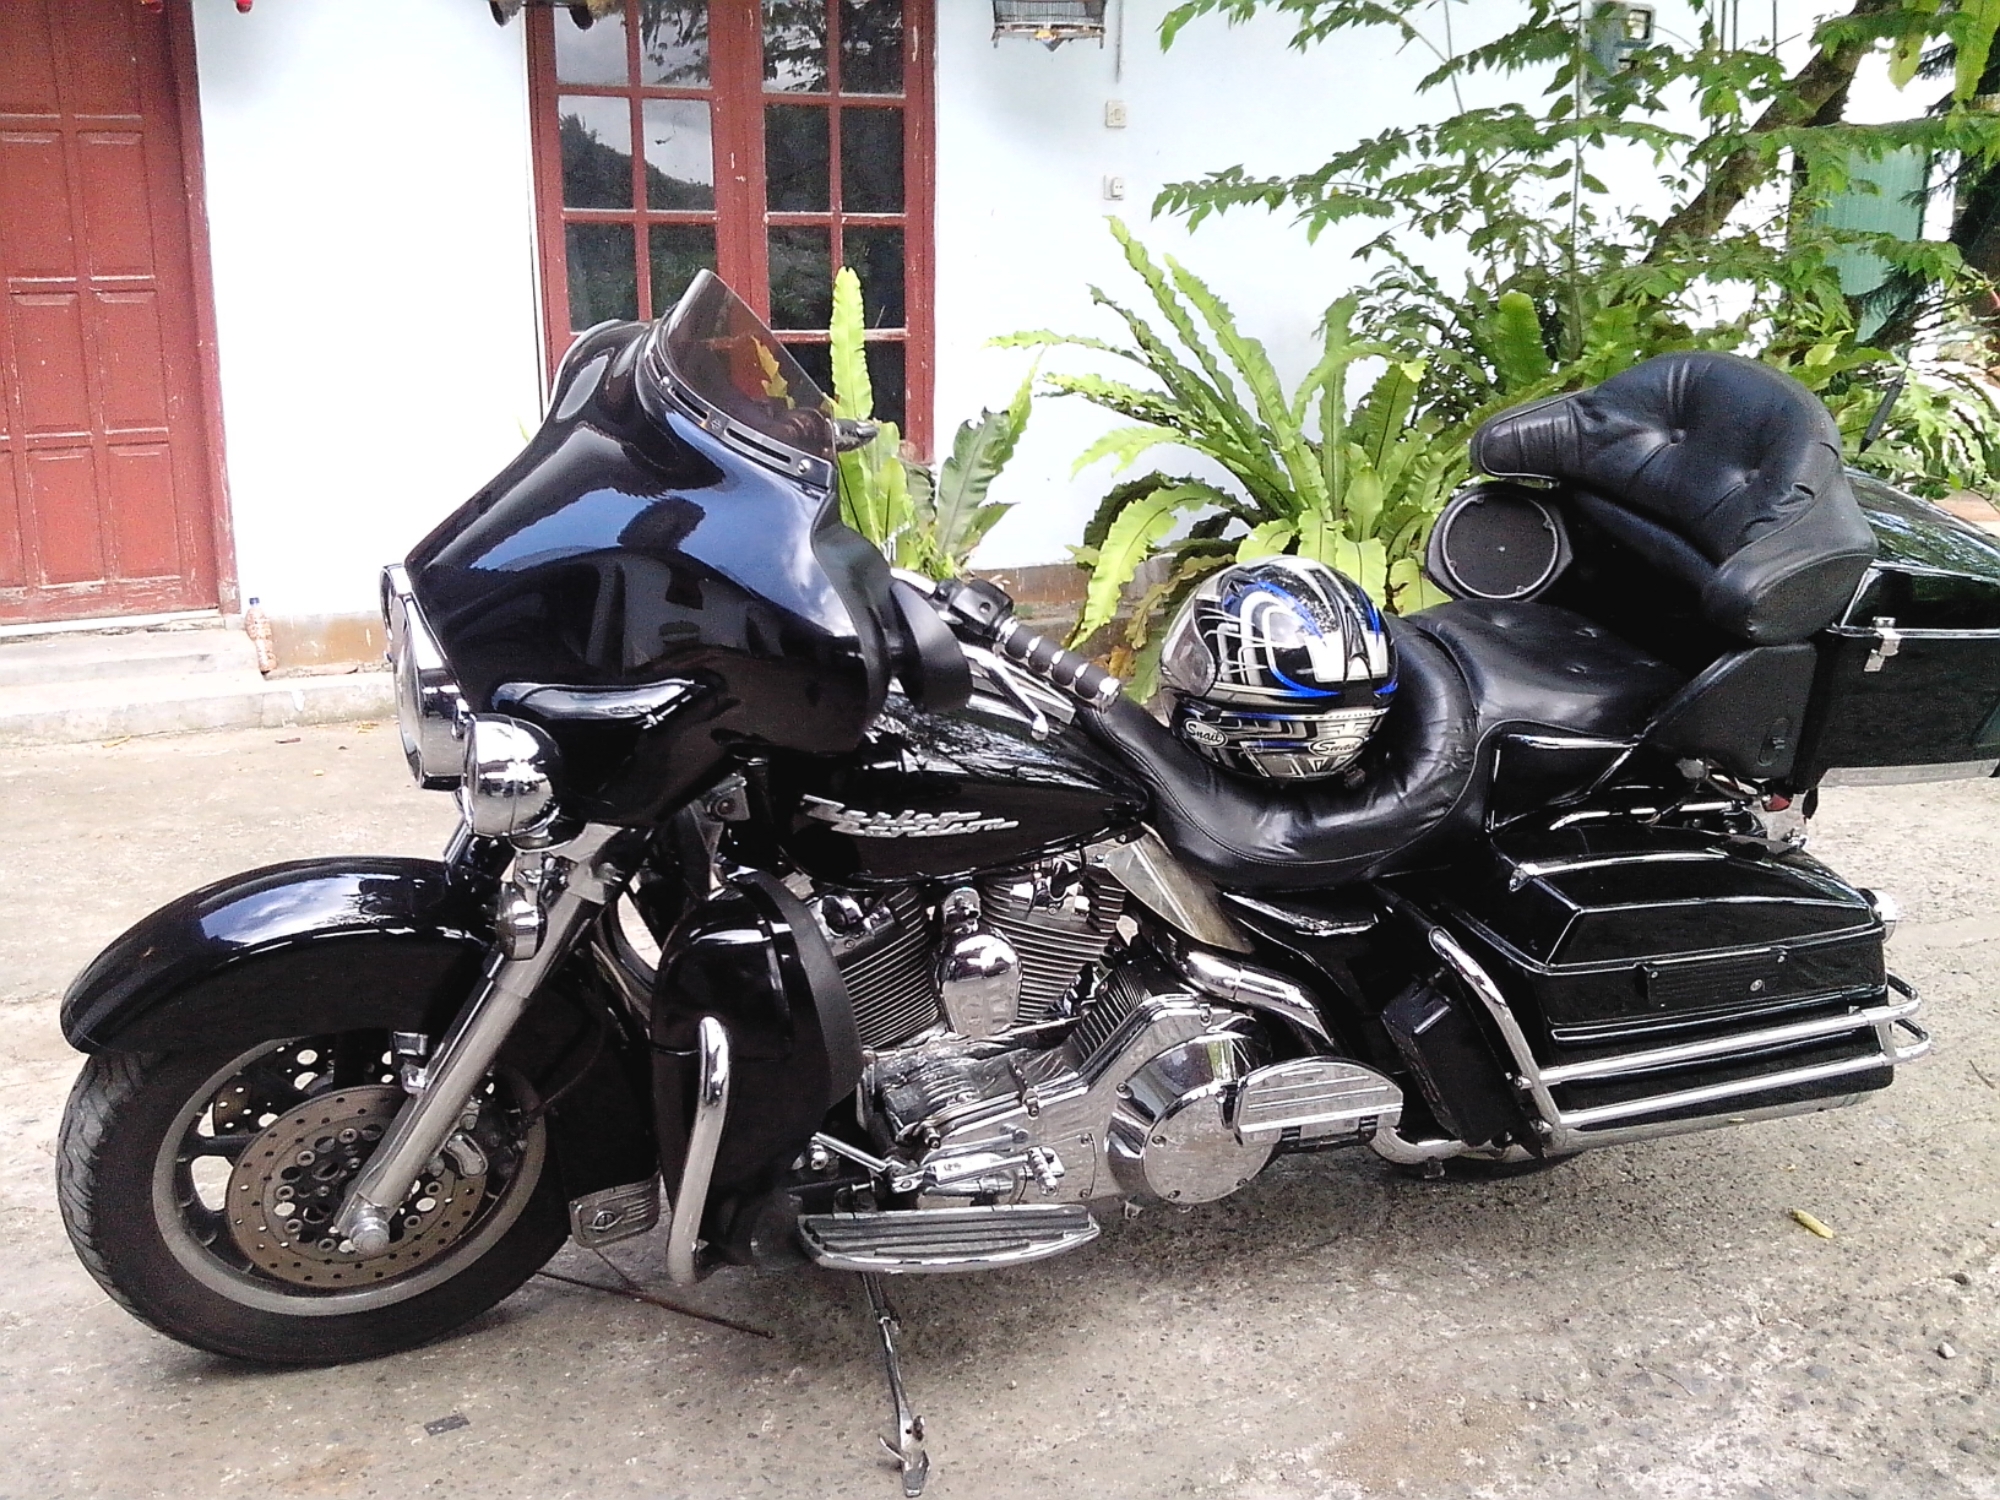 83 Modifikasi Motor Vixion Jadi Harley Terlengkap Kinyis Motor